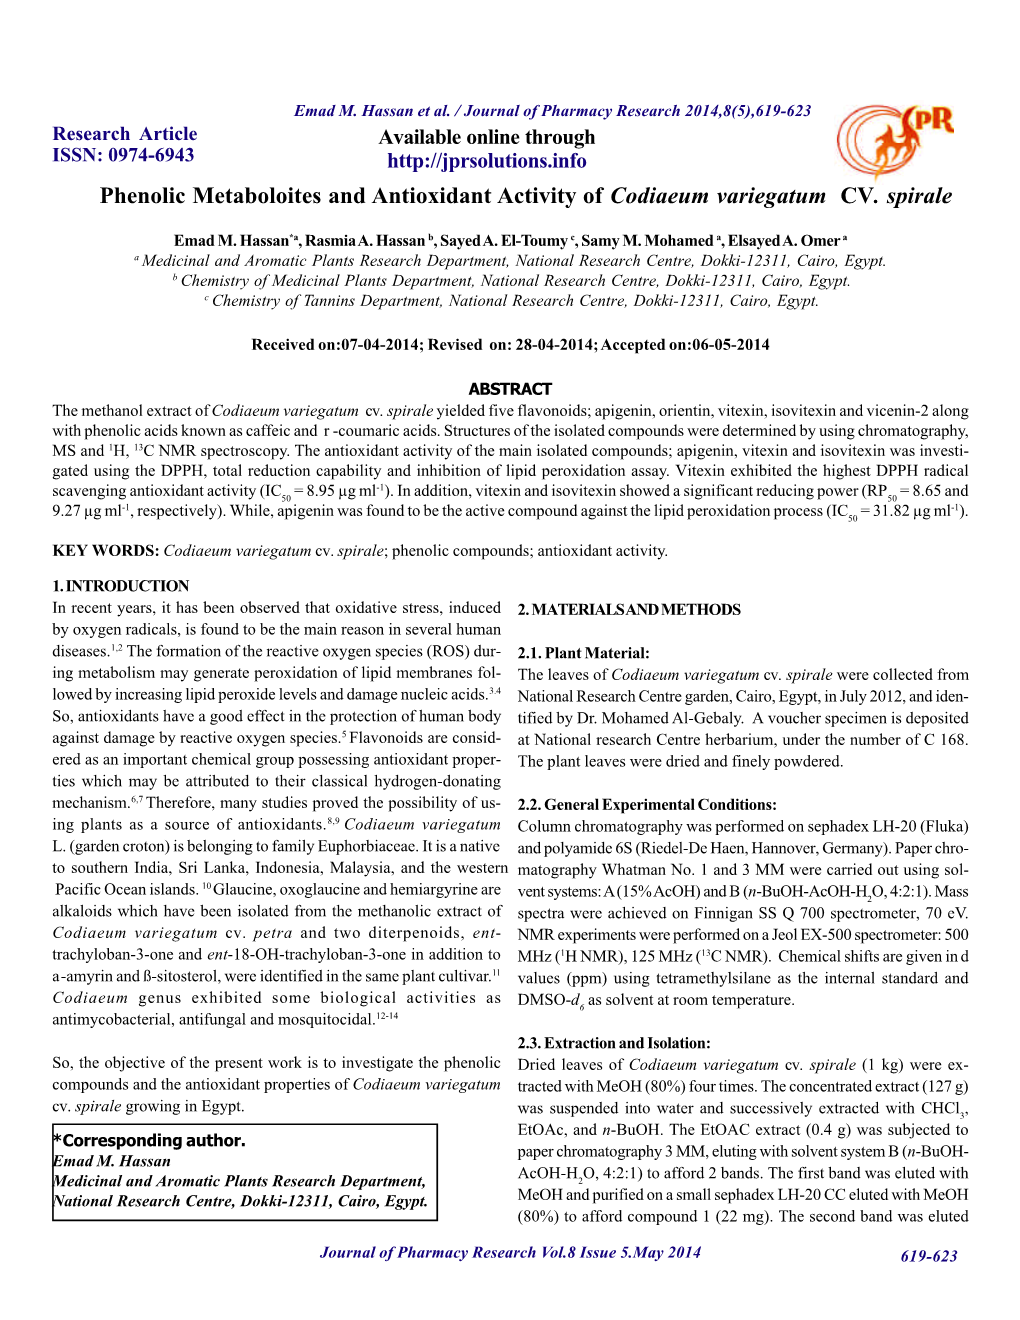 Phenolic Metaboloites and Antioxidant Activity of Codiaeum Variegatum CV